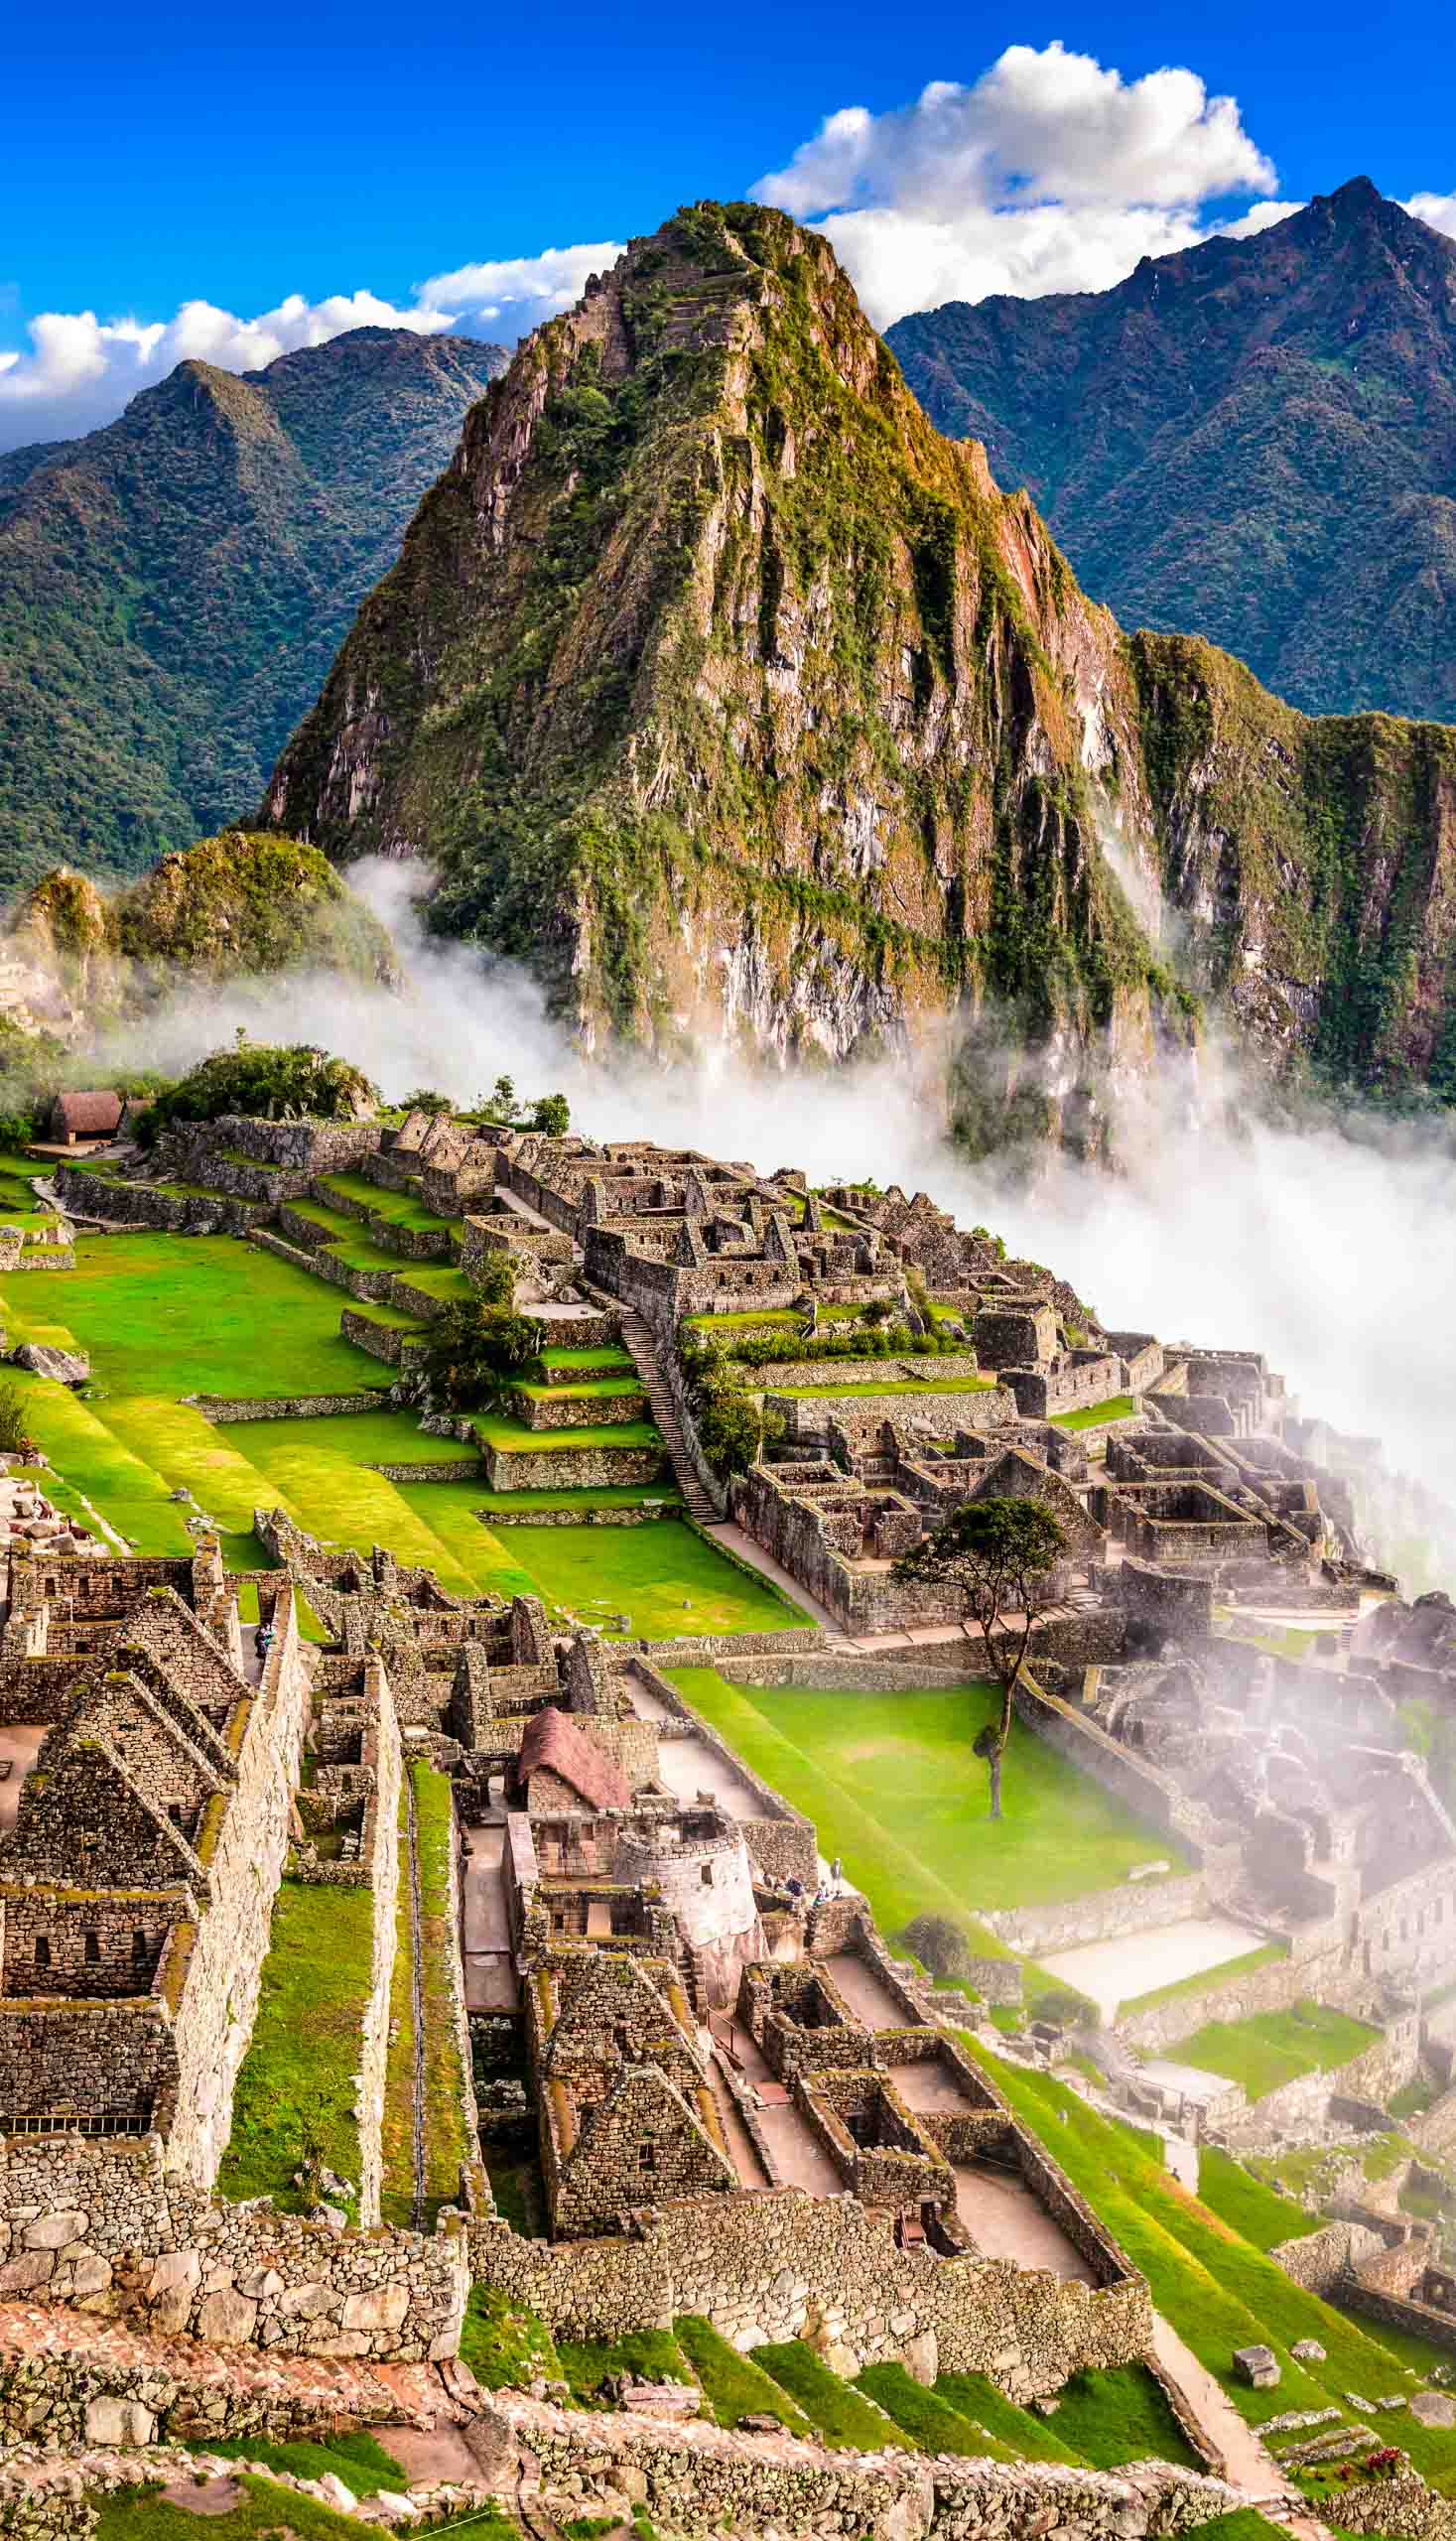 Ruins of Inca Empire city in Macchu Picchu.